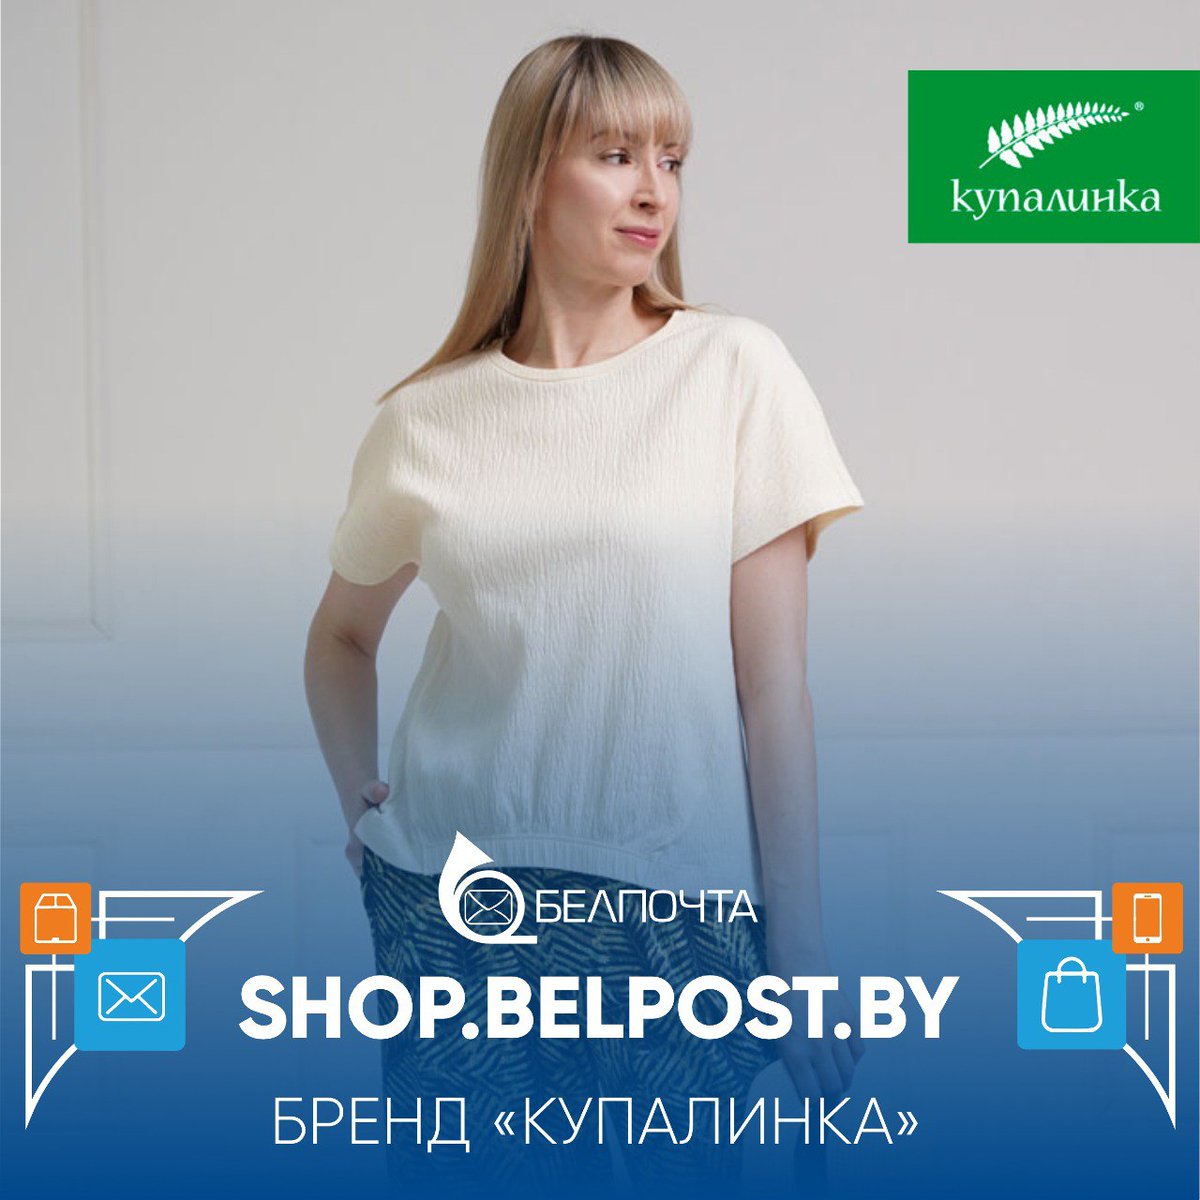 🌿 SHOP.BELPOST.BY | 'КУПАЛИНКА' - белорусские бренды 🛍 В нашем интернет-магазине доступна к заказу коллекция одежды от белорусского бренда 'Купалинка'!